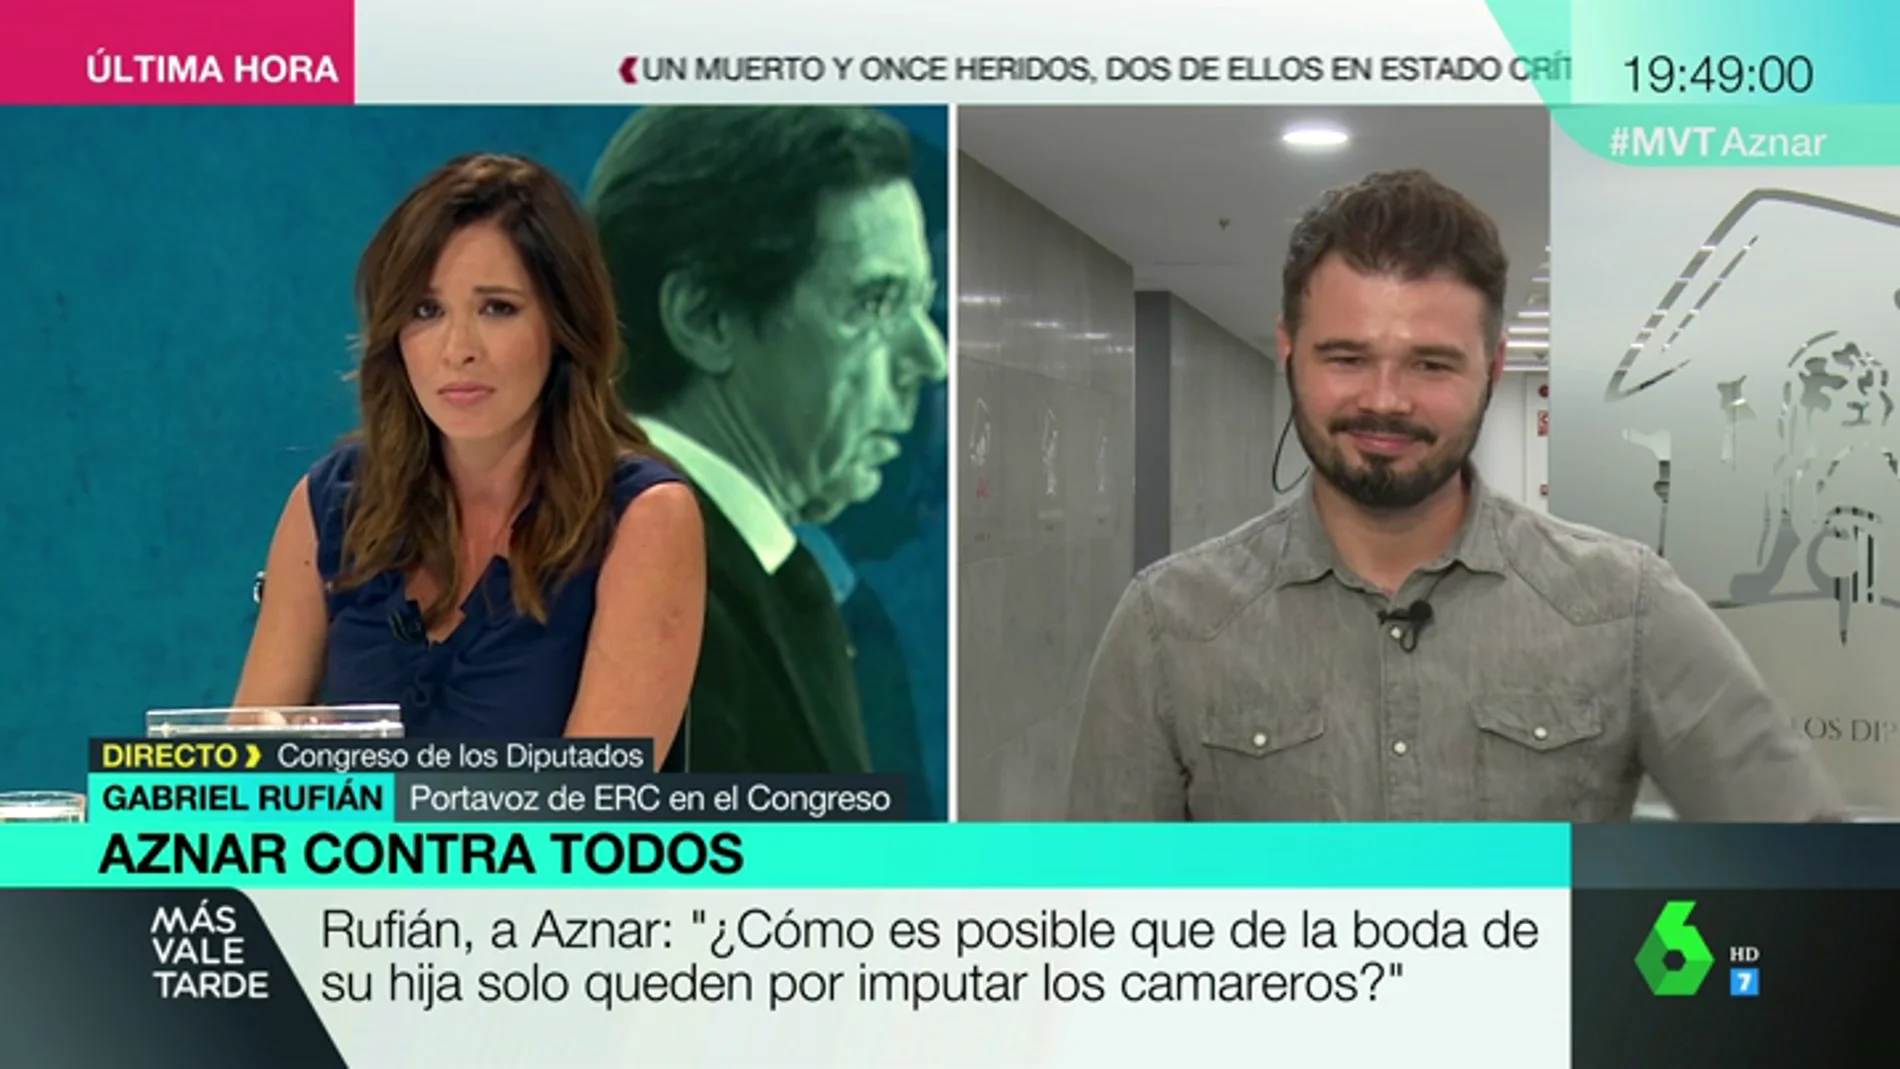 Gabriel Rufián: "La boda de la hija de Aznar me la trae al pairo, pero le tengo que preguntar por ella porque sale en muchos autos judiciales"